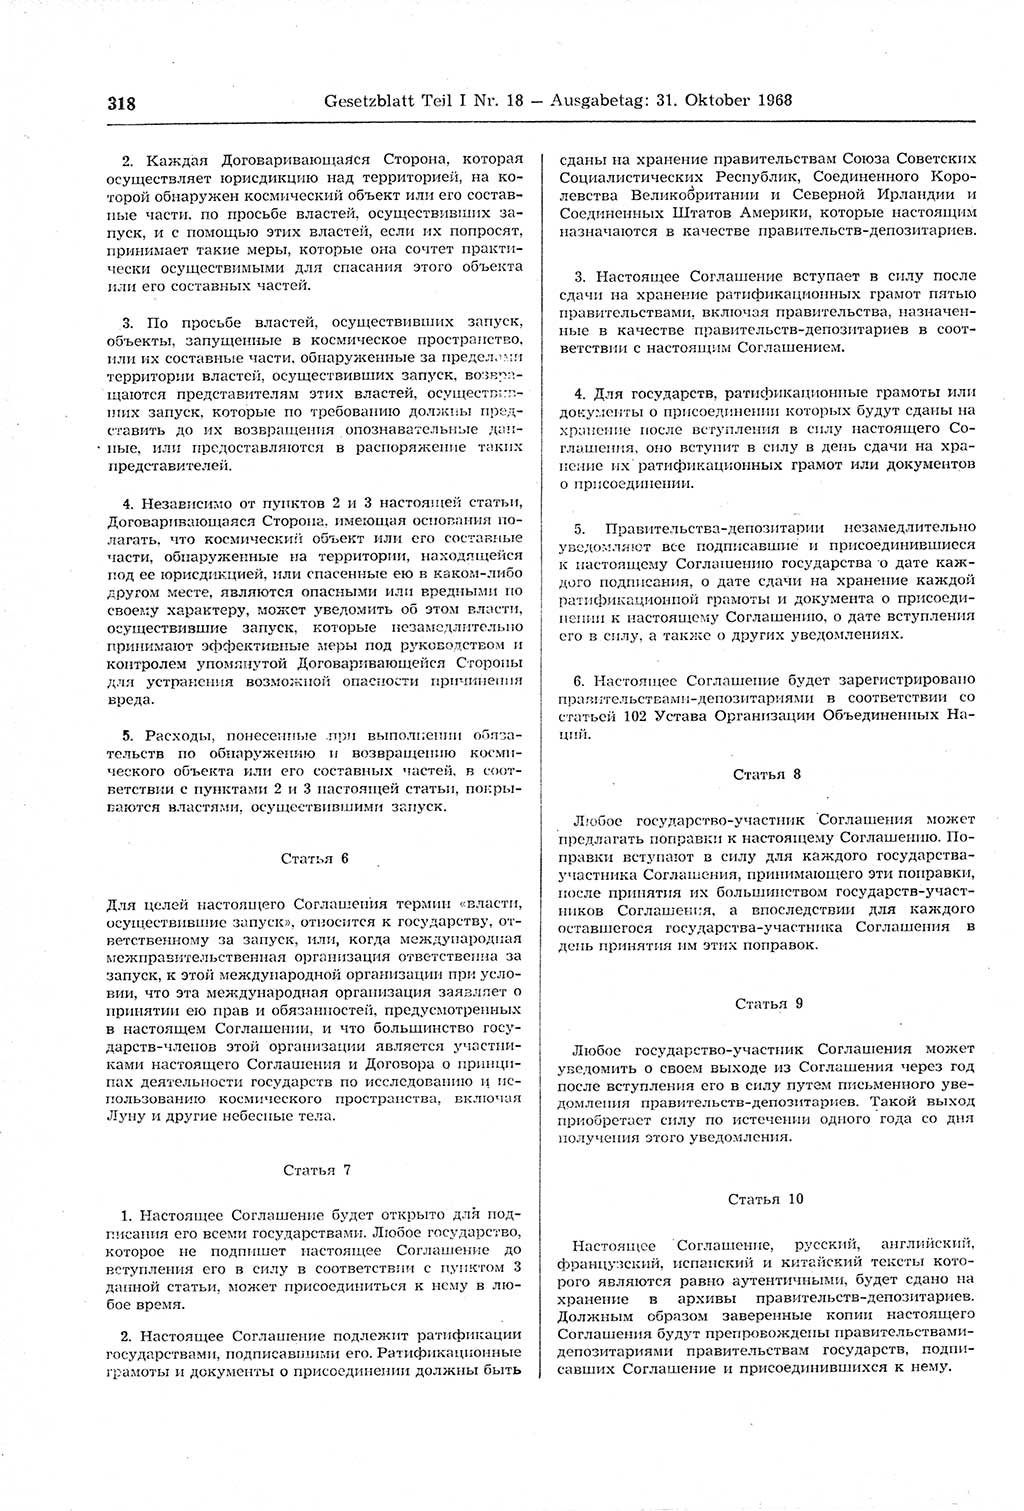 Gesetzblatt (GBl.) der Deutschen Demokratischen Republik (DDR) Teil Ⅰ 1968, Seite 318 (GBl. DDR Ⅰ 1968, S. 318)